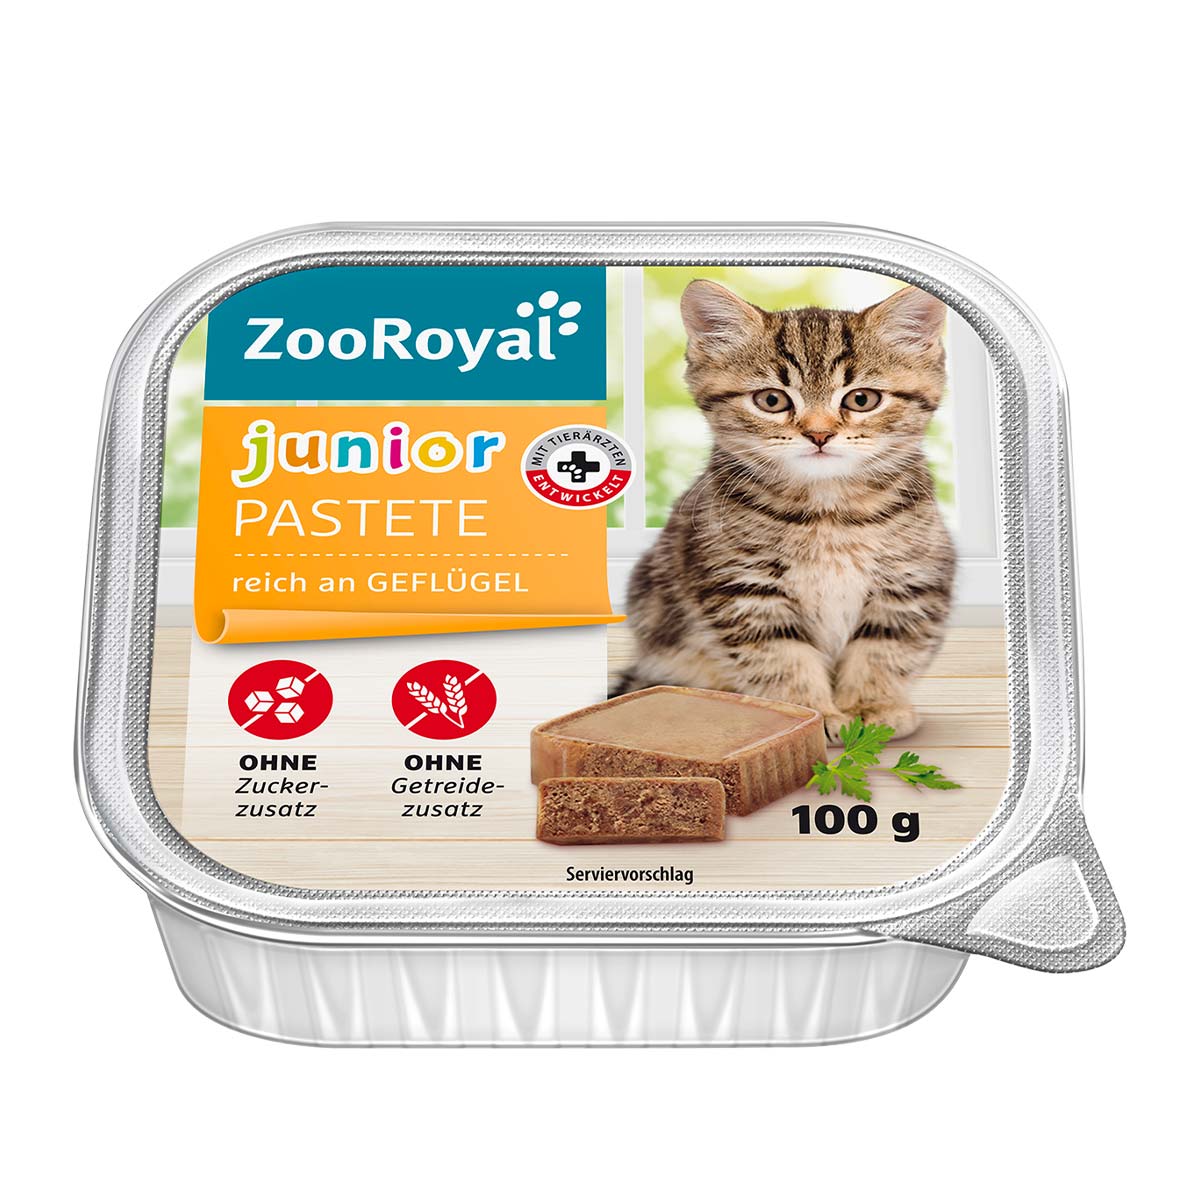 ZooRoyal Junior-Pastete reich an Geflügel 16x100g